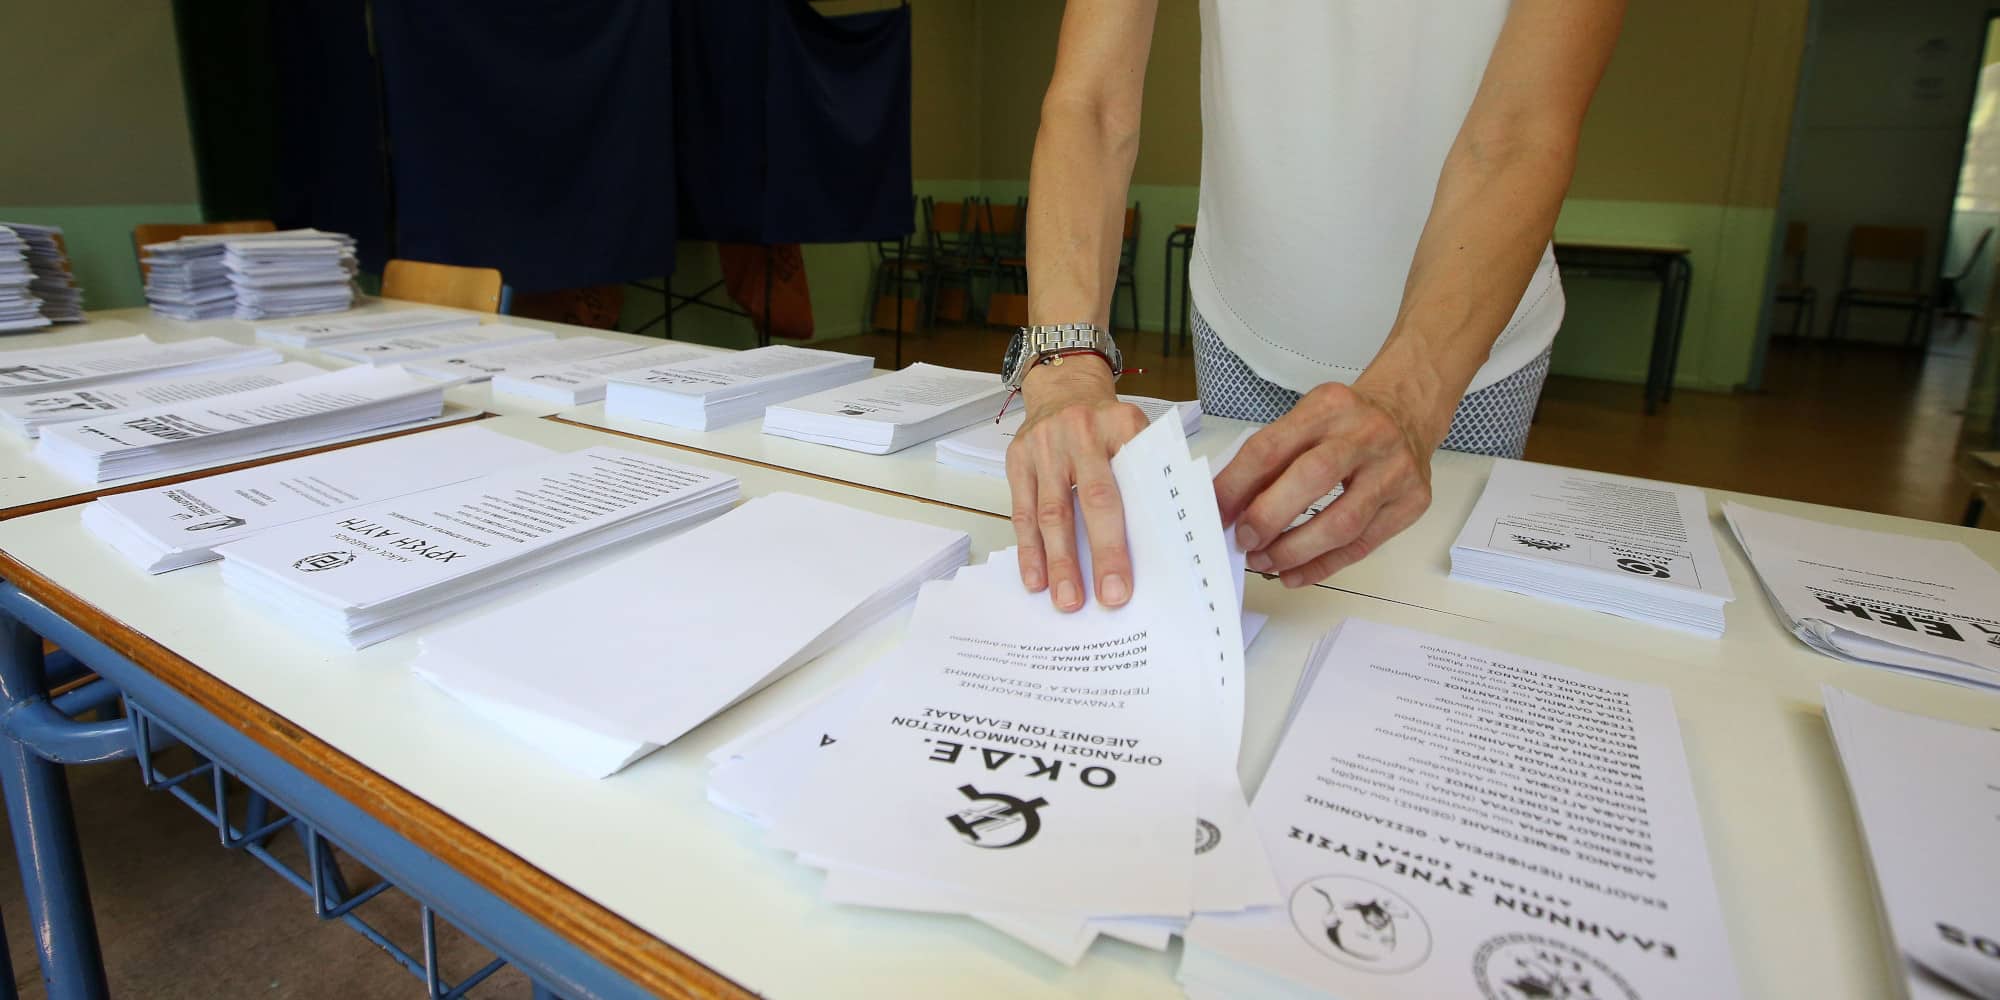 Μάθετε πρώτοι τα αποτελέσματα των εκλογών στην Καρδίτσα